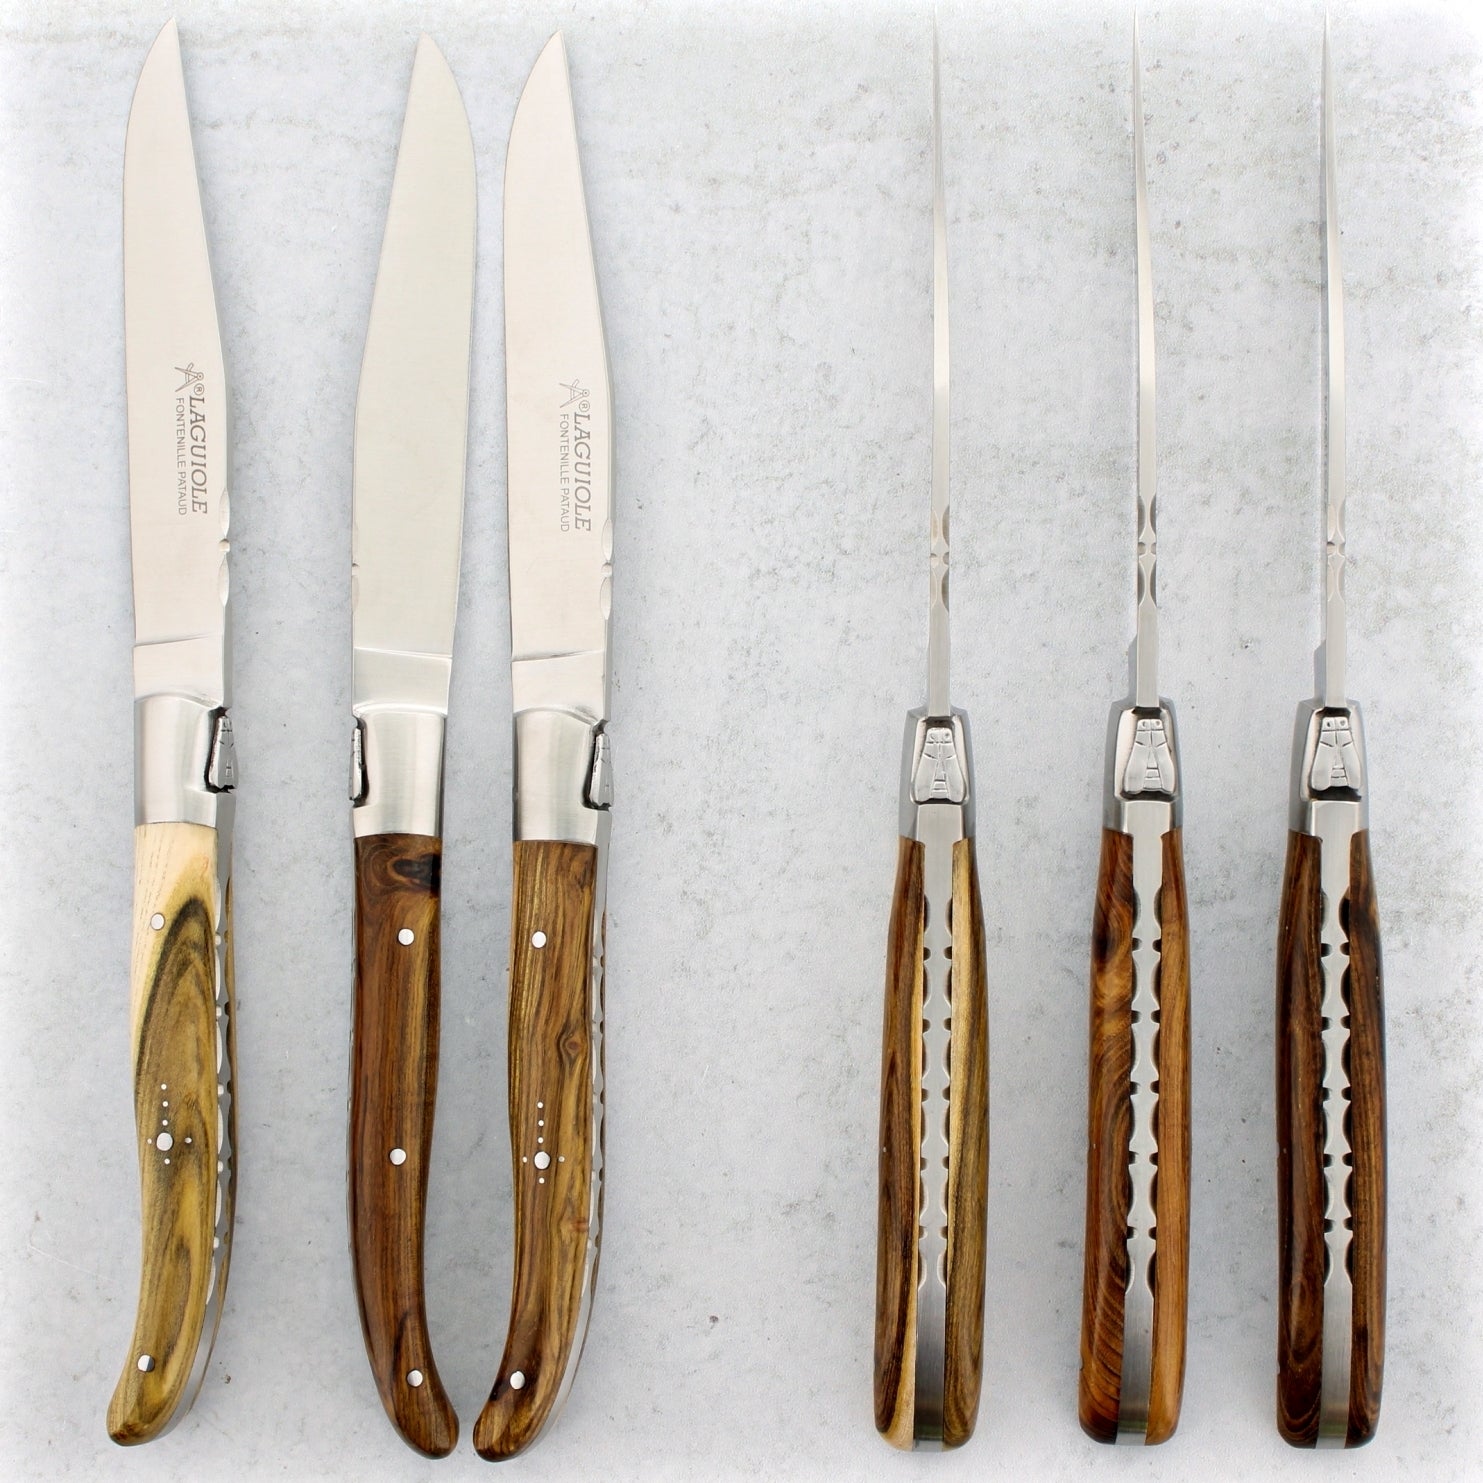 Laguiole Forged Steak Knives Pistachio Wood